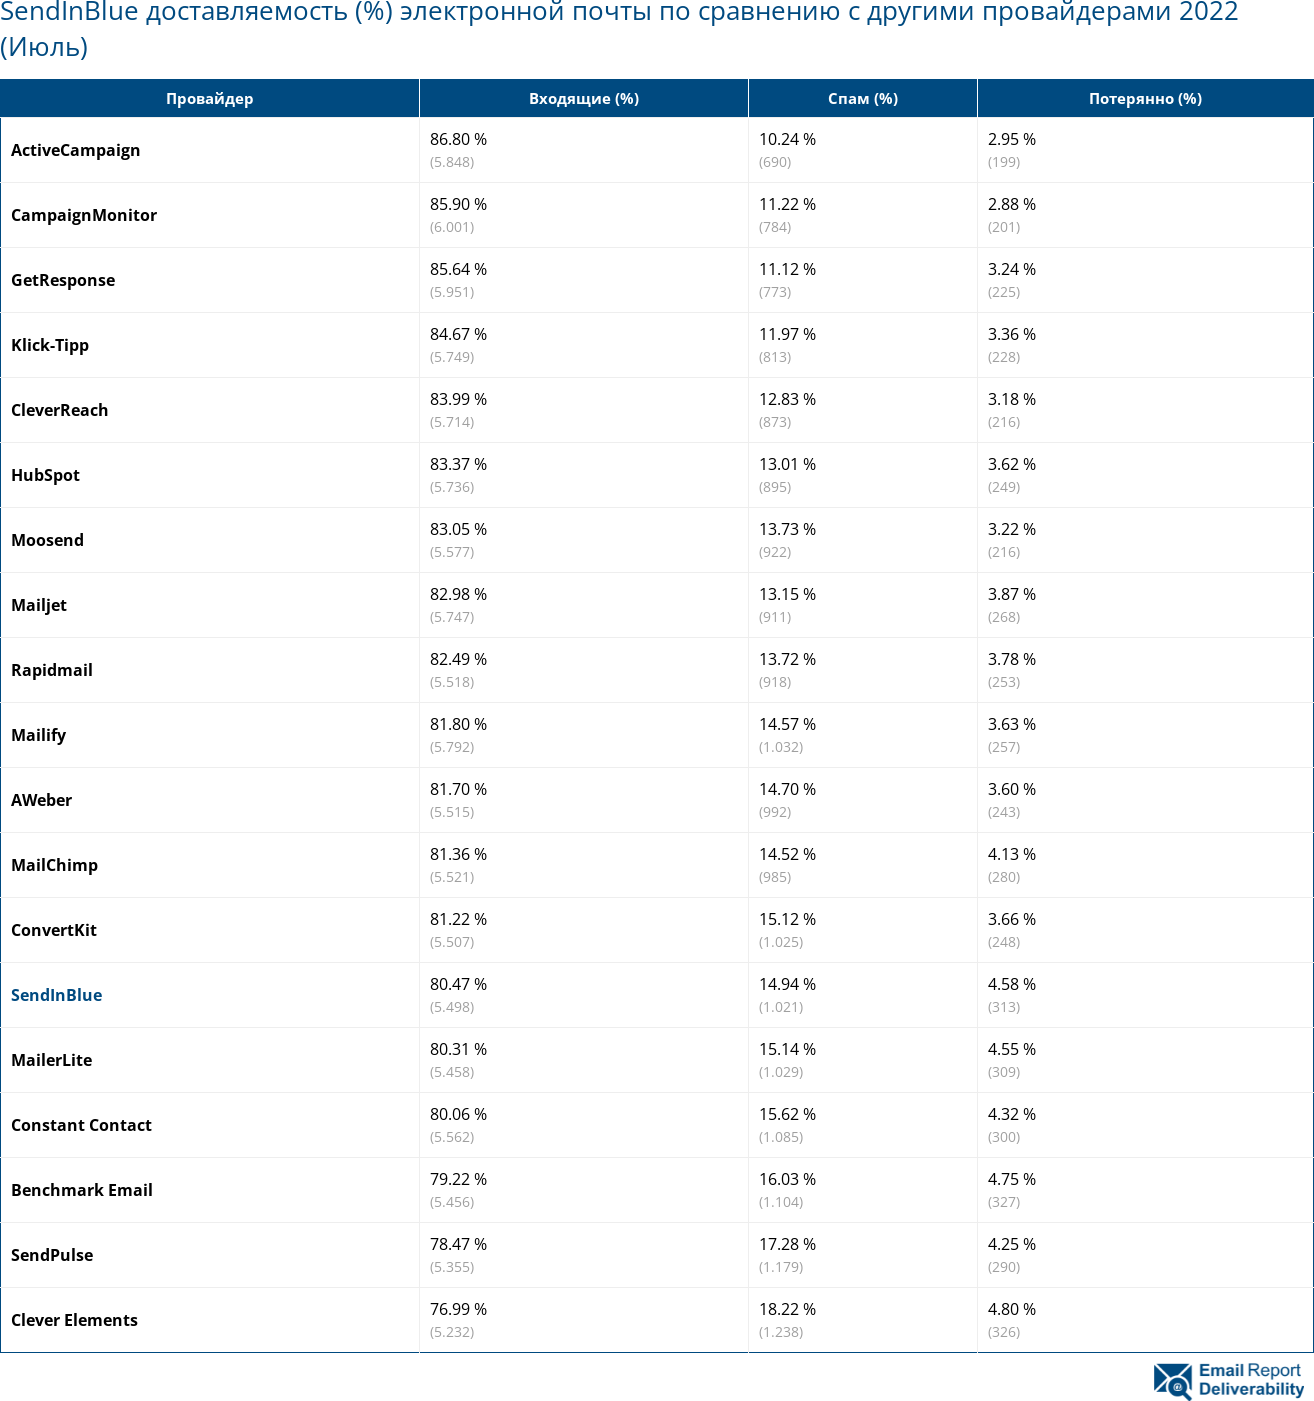 SendInBlue доставляемость (%) электронной почты по сравнению с другими провайдерами 2022 (Июль)